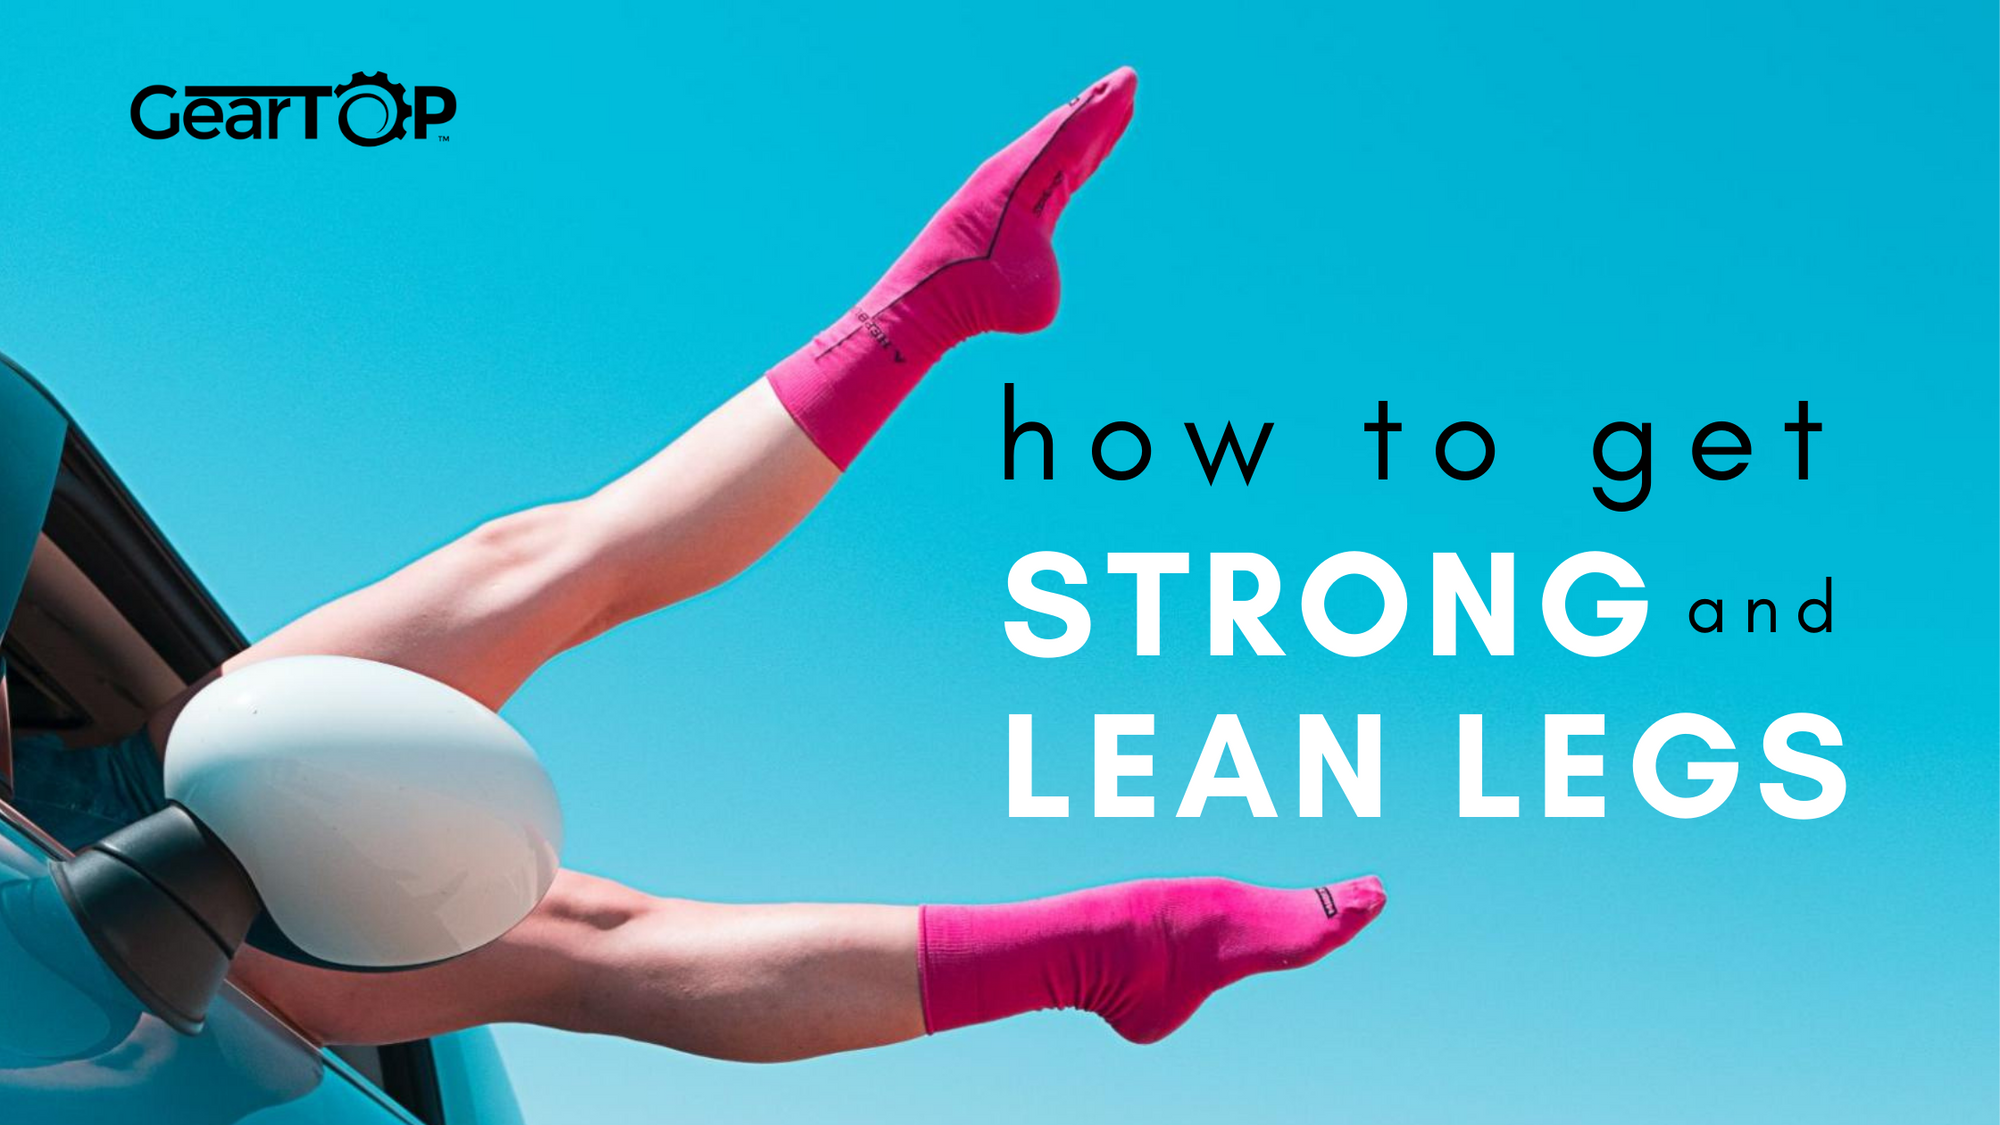 Lean leg workouts